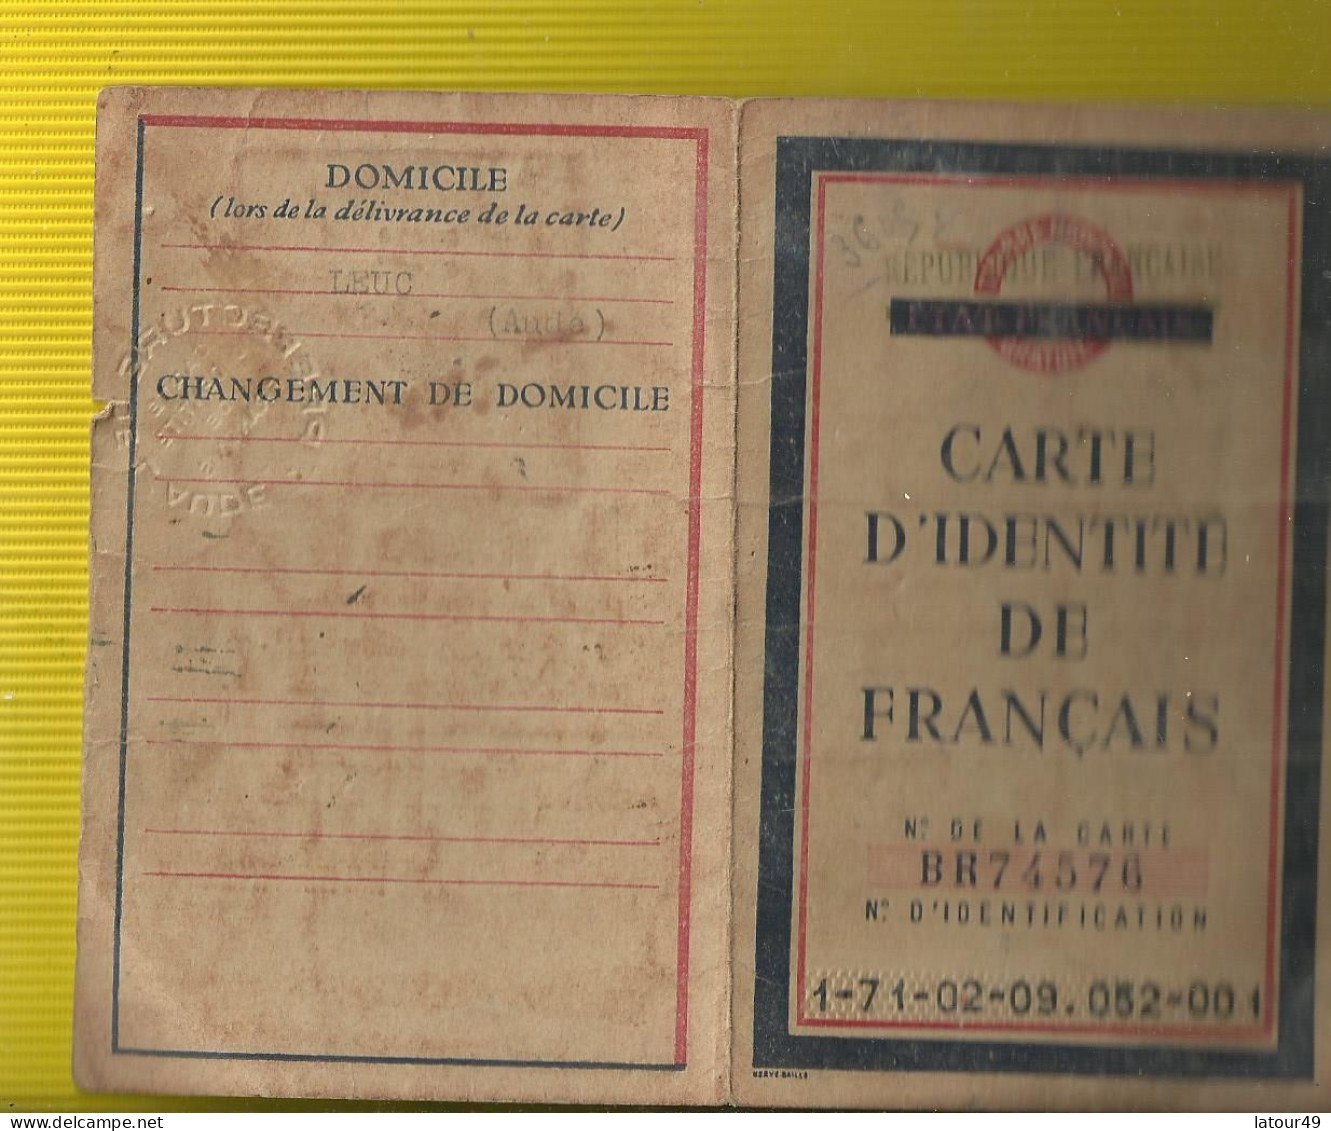 Carte D Identite De Francais - Historical Documents